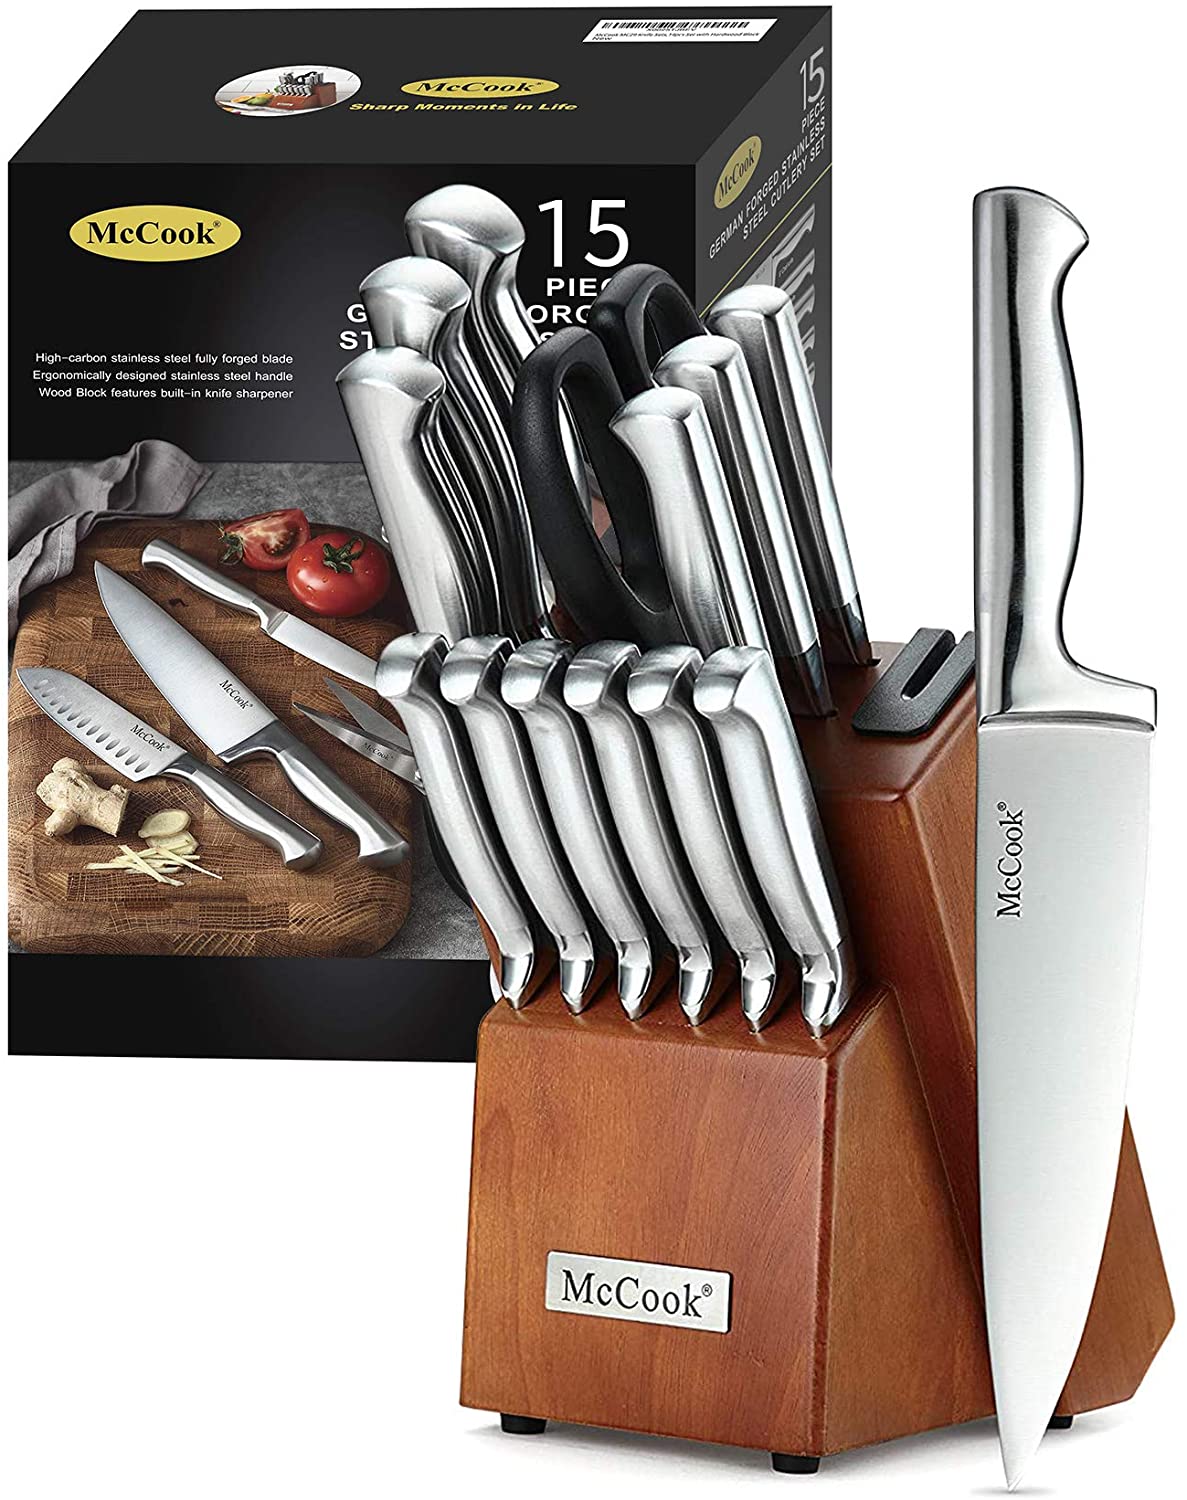 McCook Knife Sets 15-Piece Knife Block Sets with Built-in Sharpener